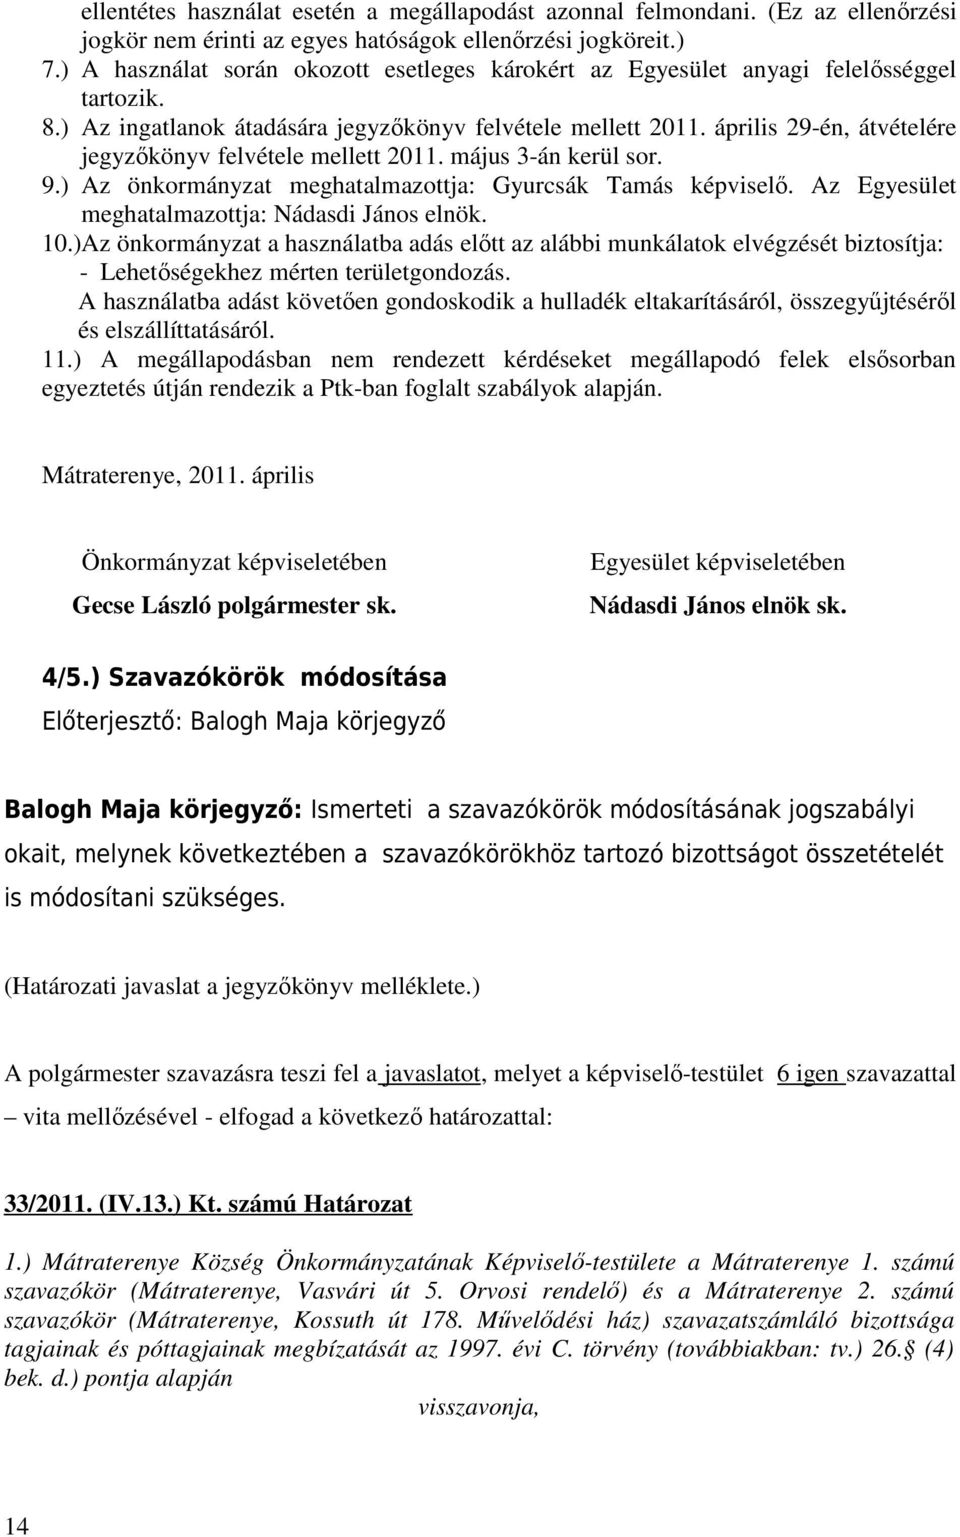 április 29-én, átvételére jegyzőkönyv felvétele mellett 2011. május 3-án kerül sor. 9.) Az önkormányzat meghatalmazottja: Gyurcsák Tamás képviselő. Az Egyesület meghatalmazottja: Nádasdi János elnök.